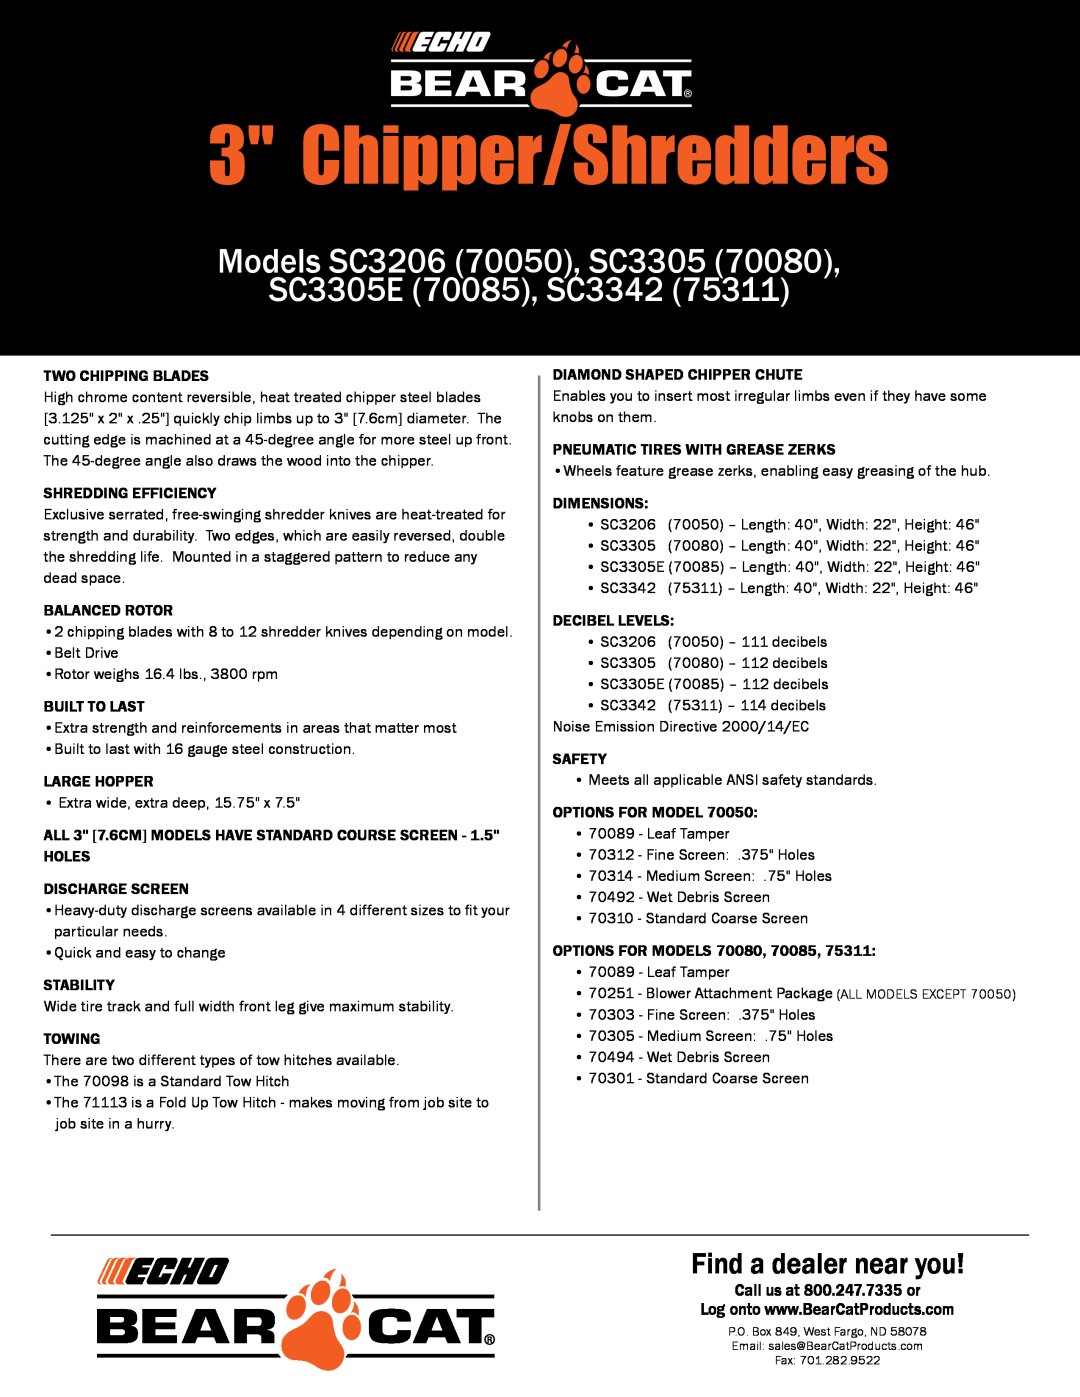 Echo SC3305 (70080) manual Chipper/Shredders, Models SC3206 70050, SC3305 SC3305E 70085, SC3342, Find a dealer near you 